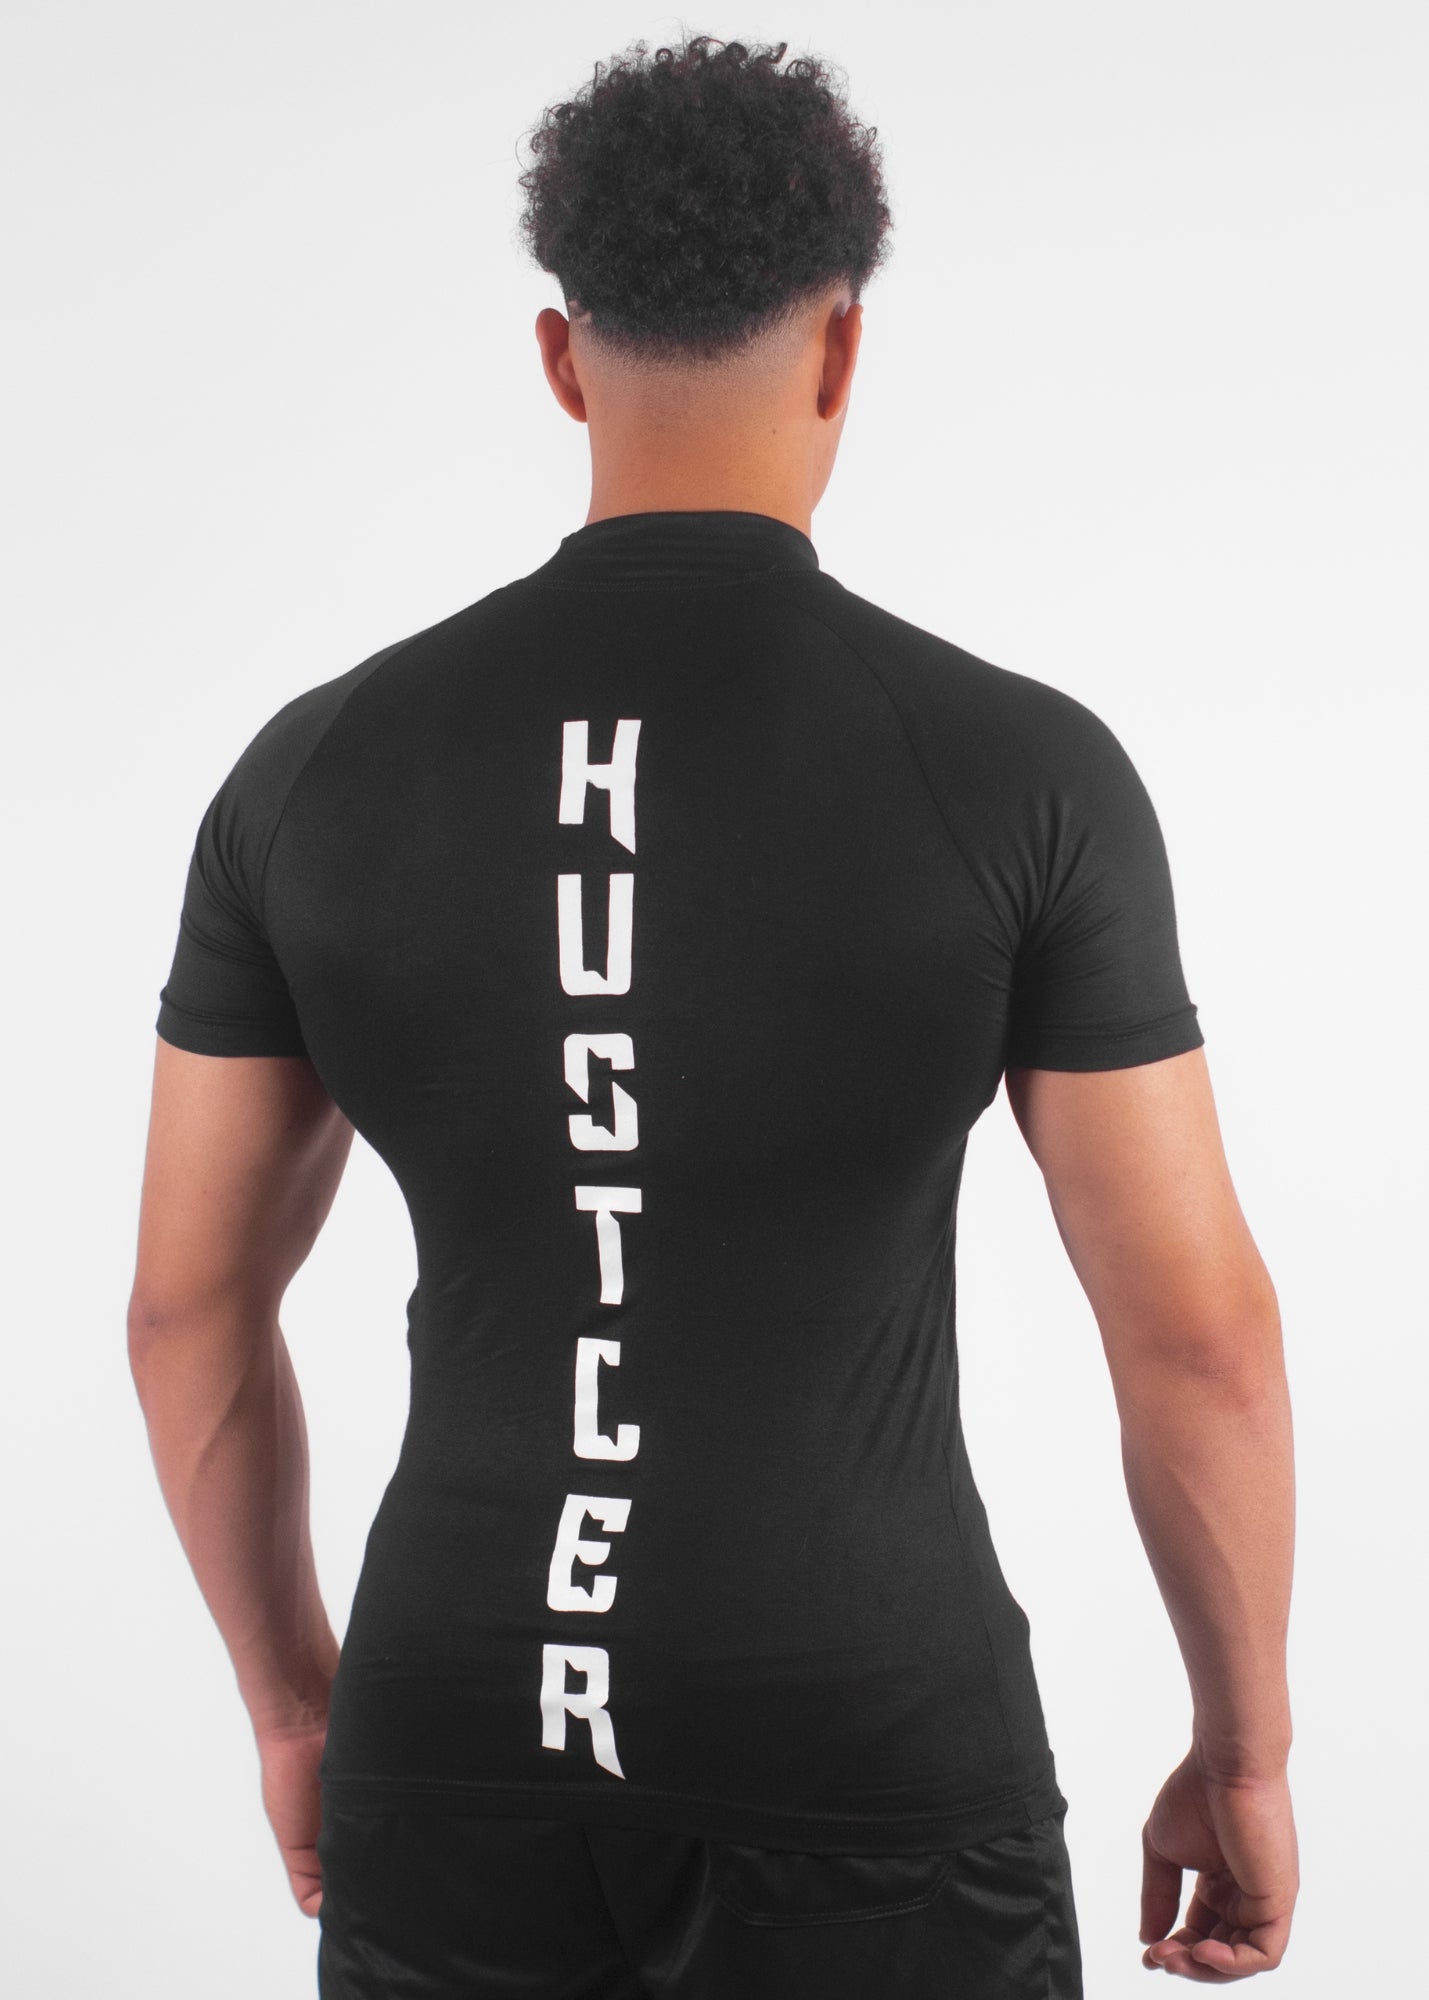 APEX™ Compression T-Shirt "HUSTLER" – NOIR